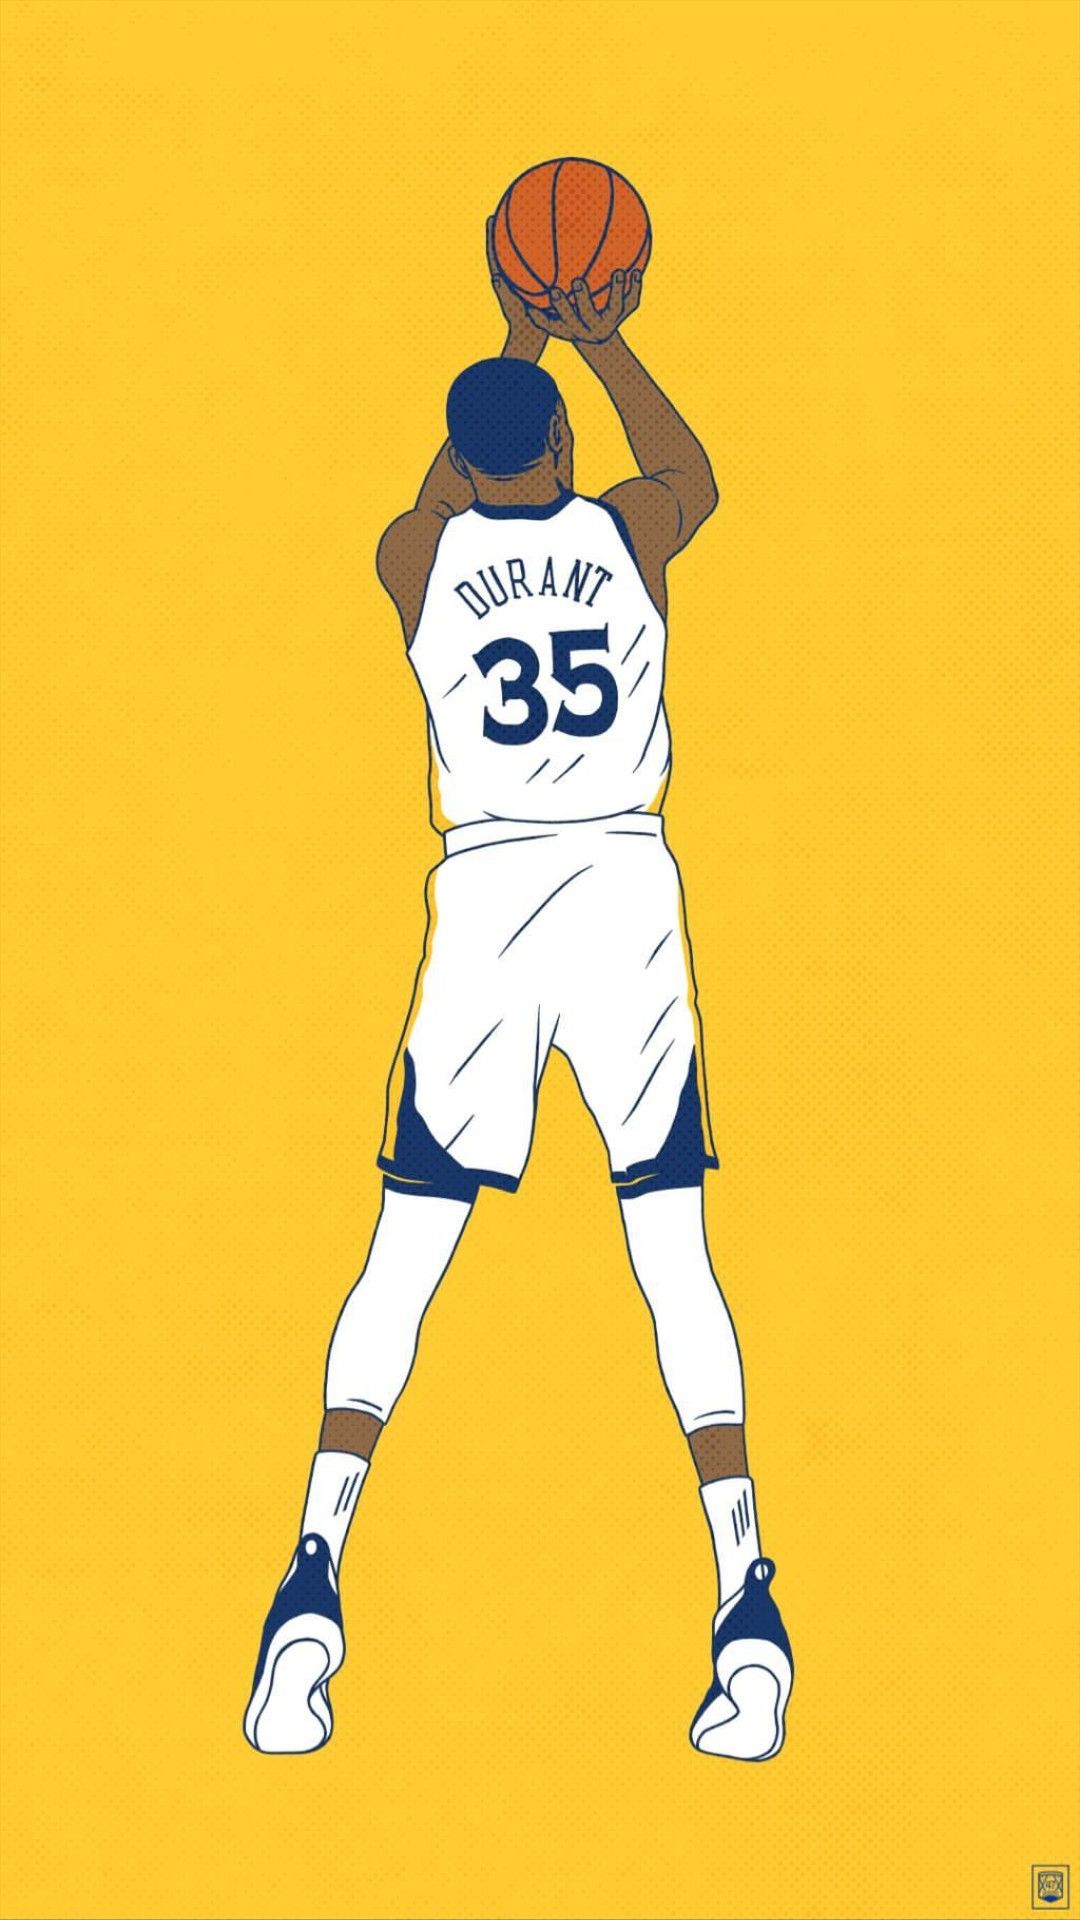 Kevin Durant wallpaper. Kevin durant wallpaper, Nba wallpaper, Nba basketball art